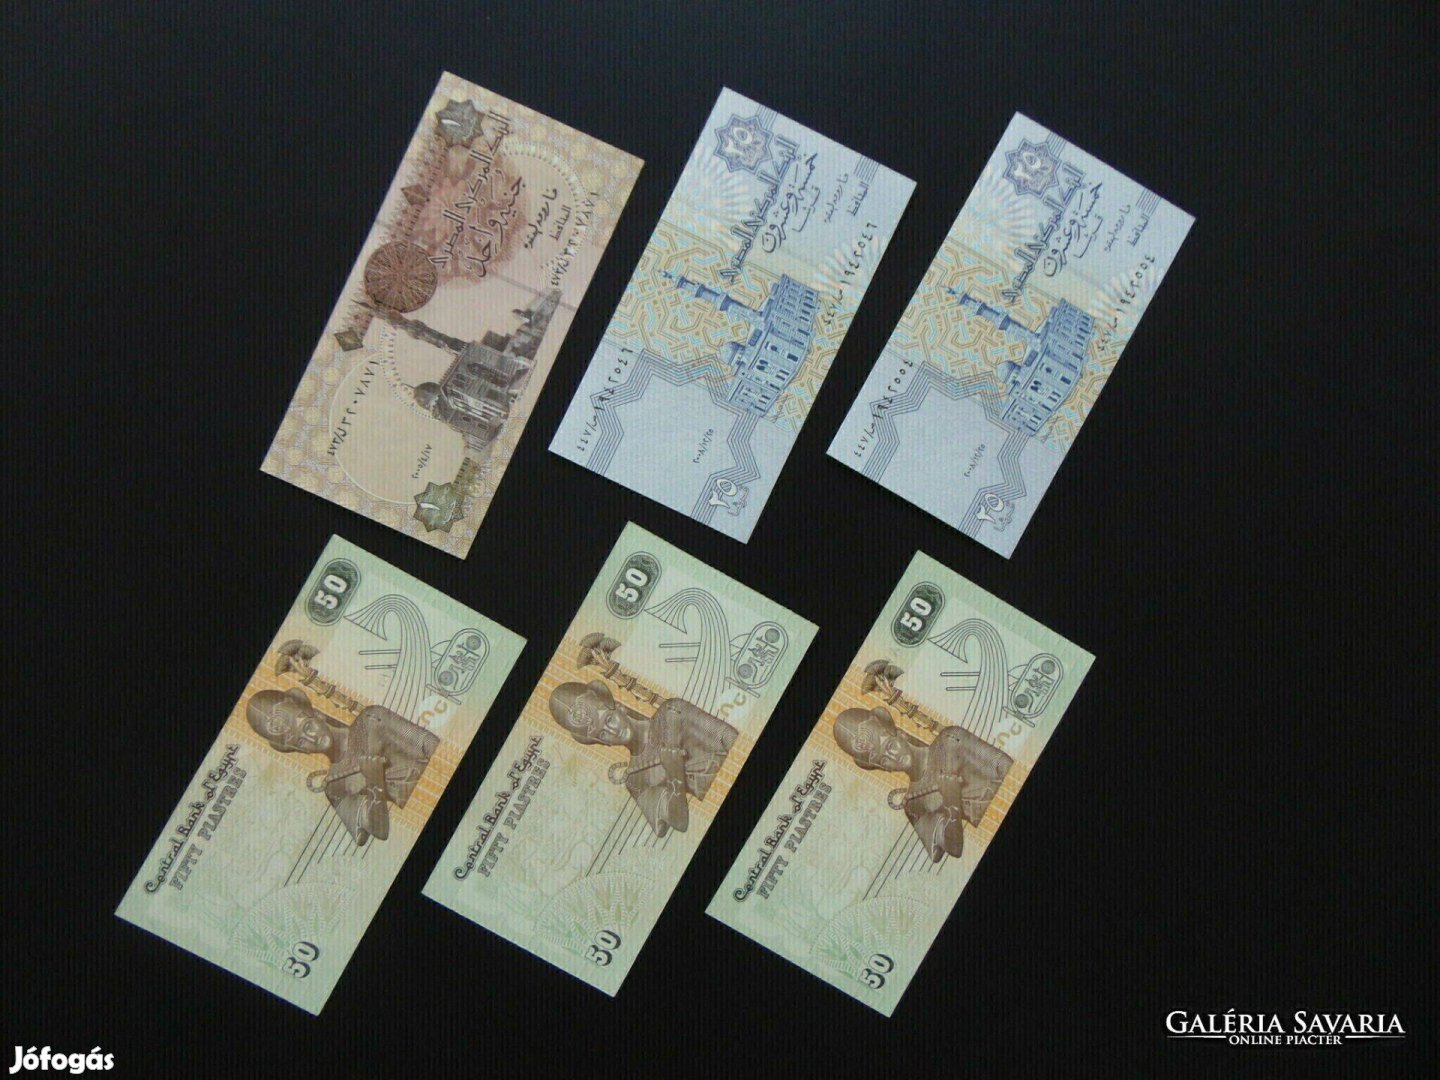 Egyiptom 6 darab bankjegy piaster - pound LOT ! Hajtatlan bankjegyek